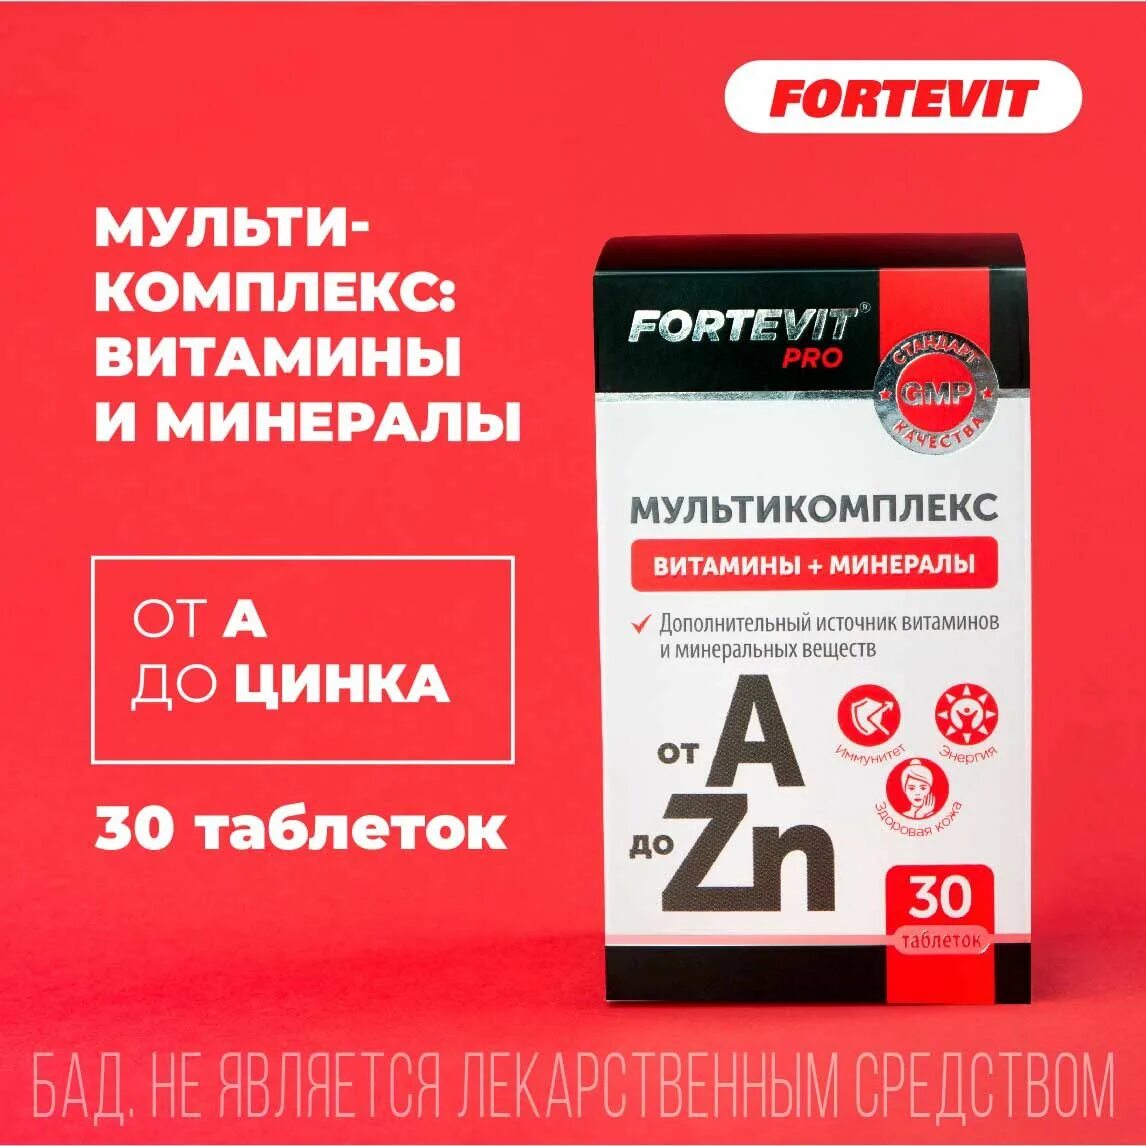 Фортевит витаминно минеральный комплекс. Витамины Fortevit Pro. Фортевит про витаминно-минеральный комплекс от а до цинка. Витаминно минеральный комплекс Fortevit для женщин.